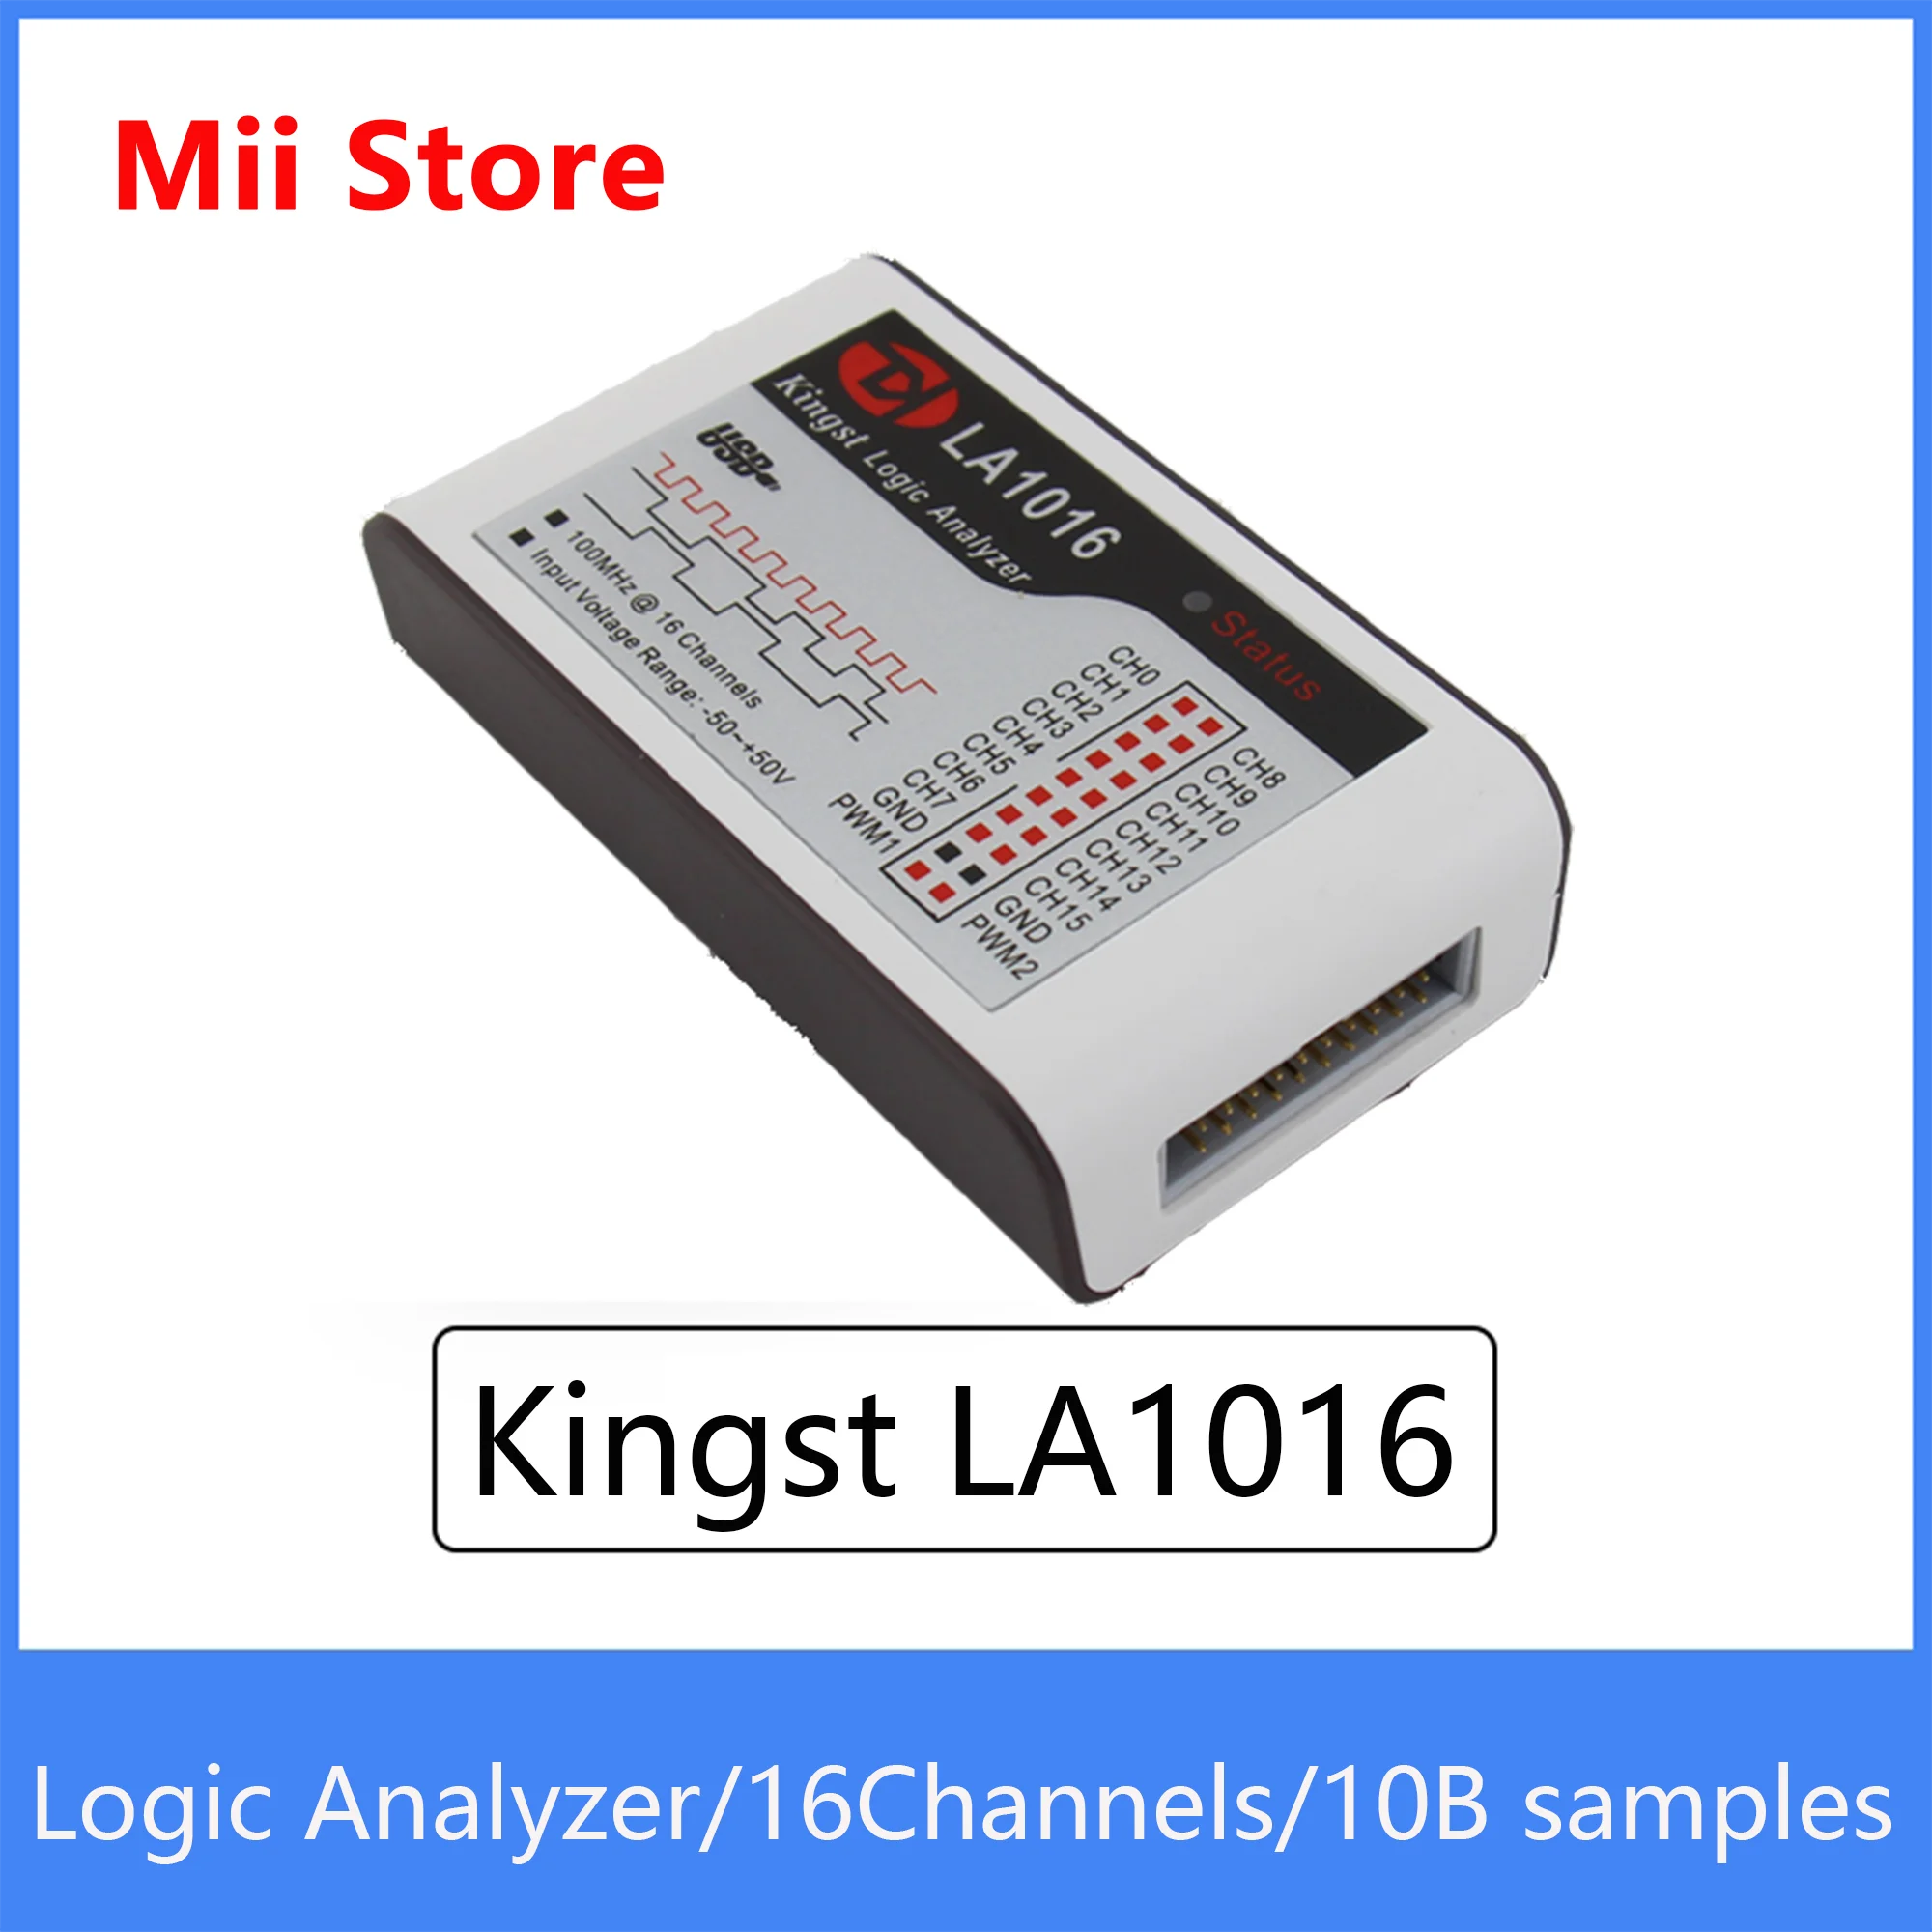 

Kingst LA1016 USB логический анализатор 100M Максимальная скорость выборки, 16 каналов, 10B образцы, MCU,ARM, инструмент отладки FPGA, английское программное ...